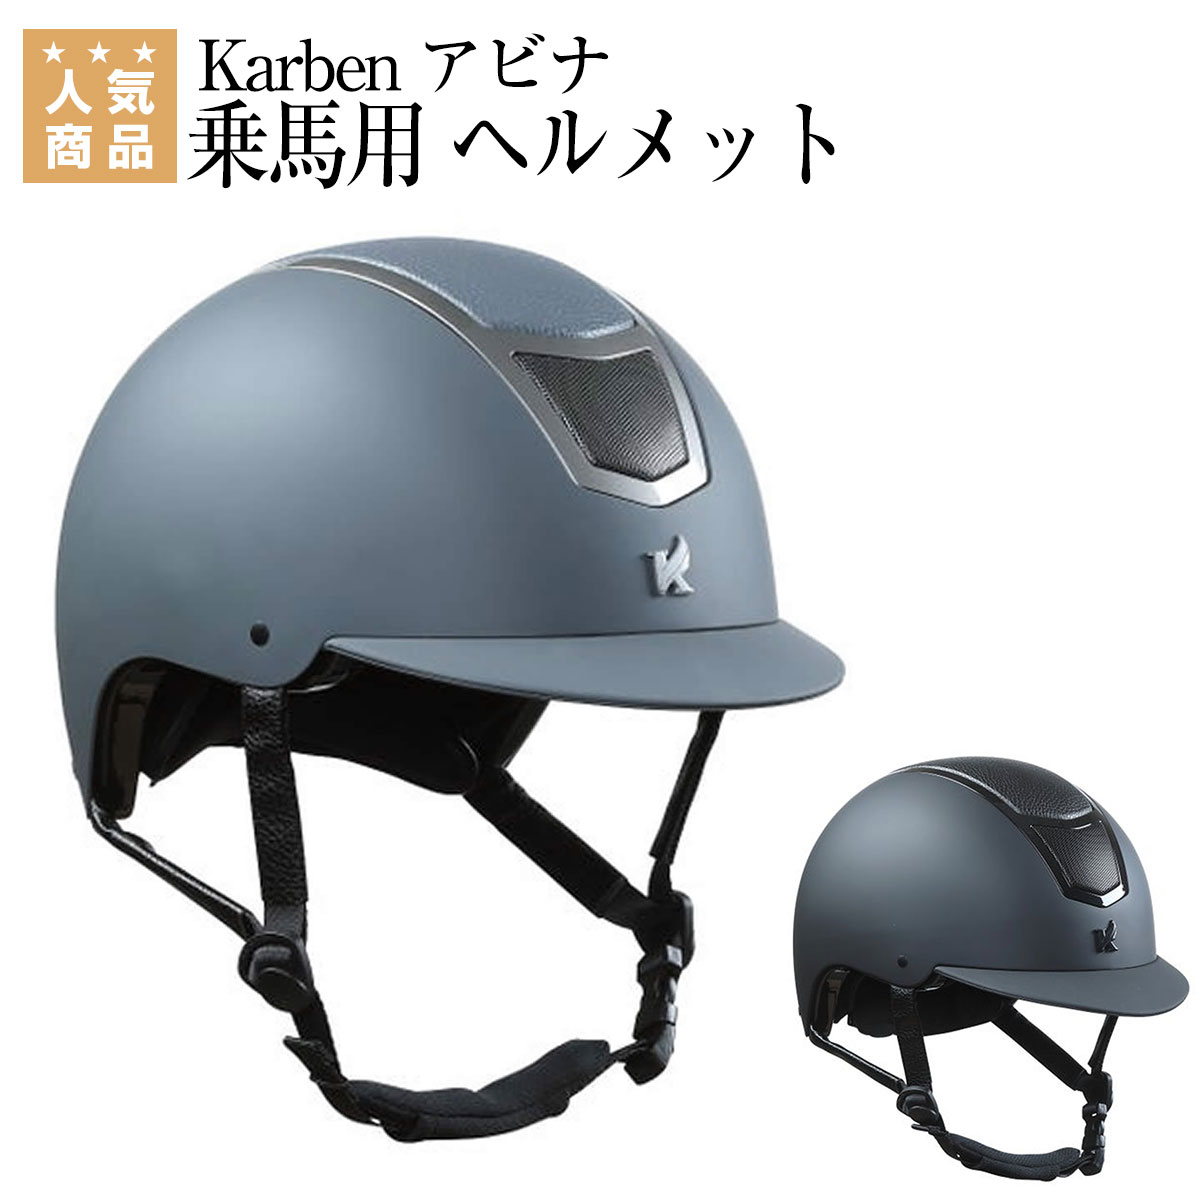 30800円 超人気 専門店 uvex 乗馬用ヘルメット